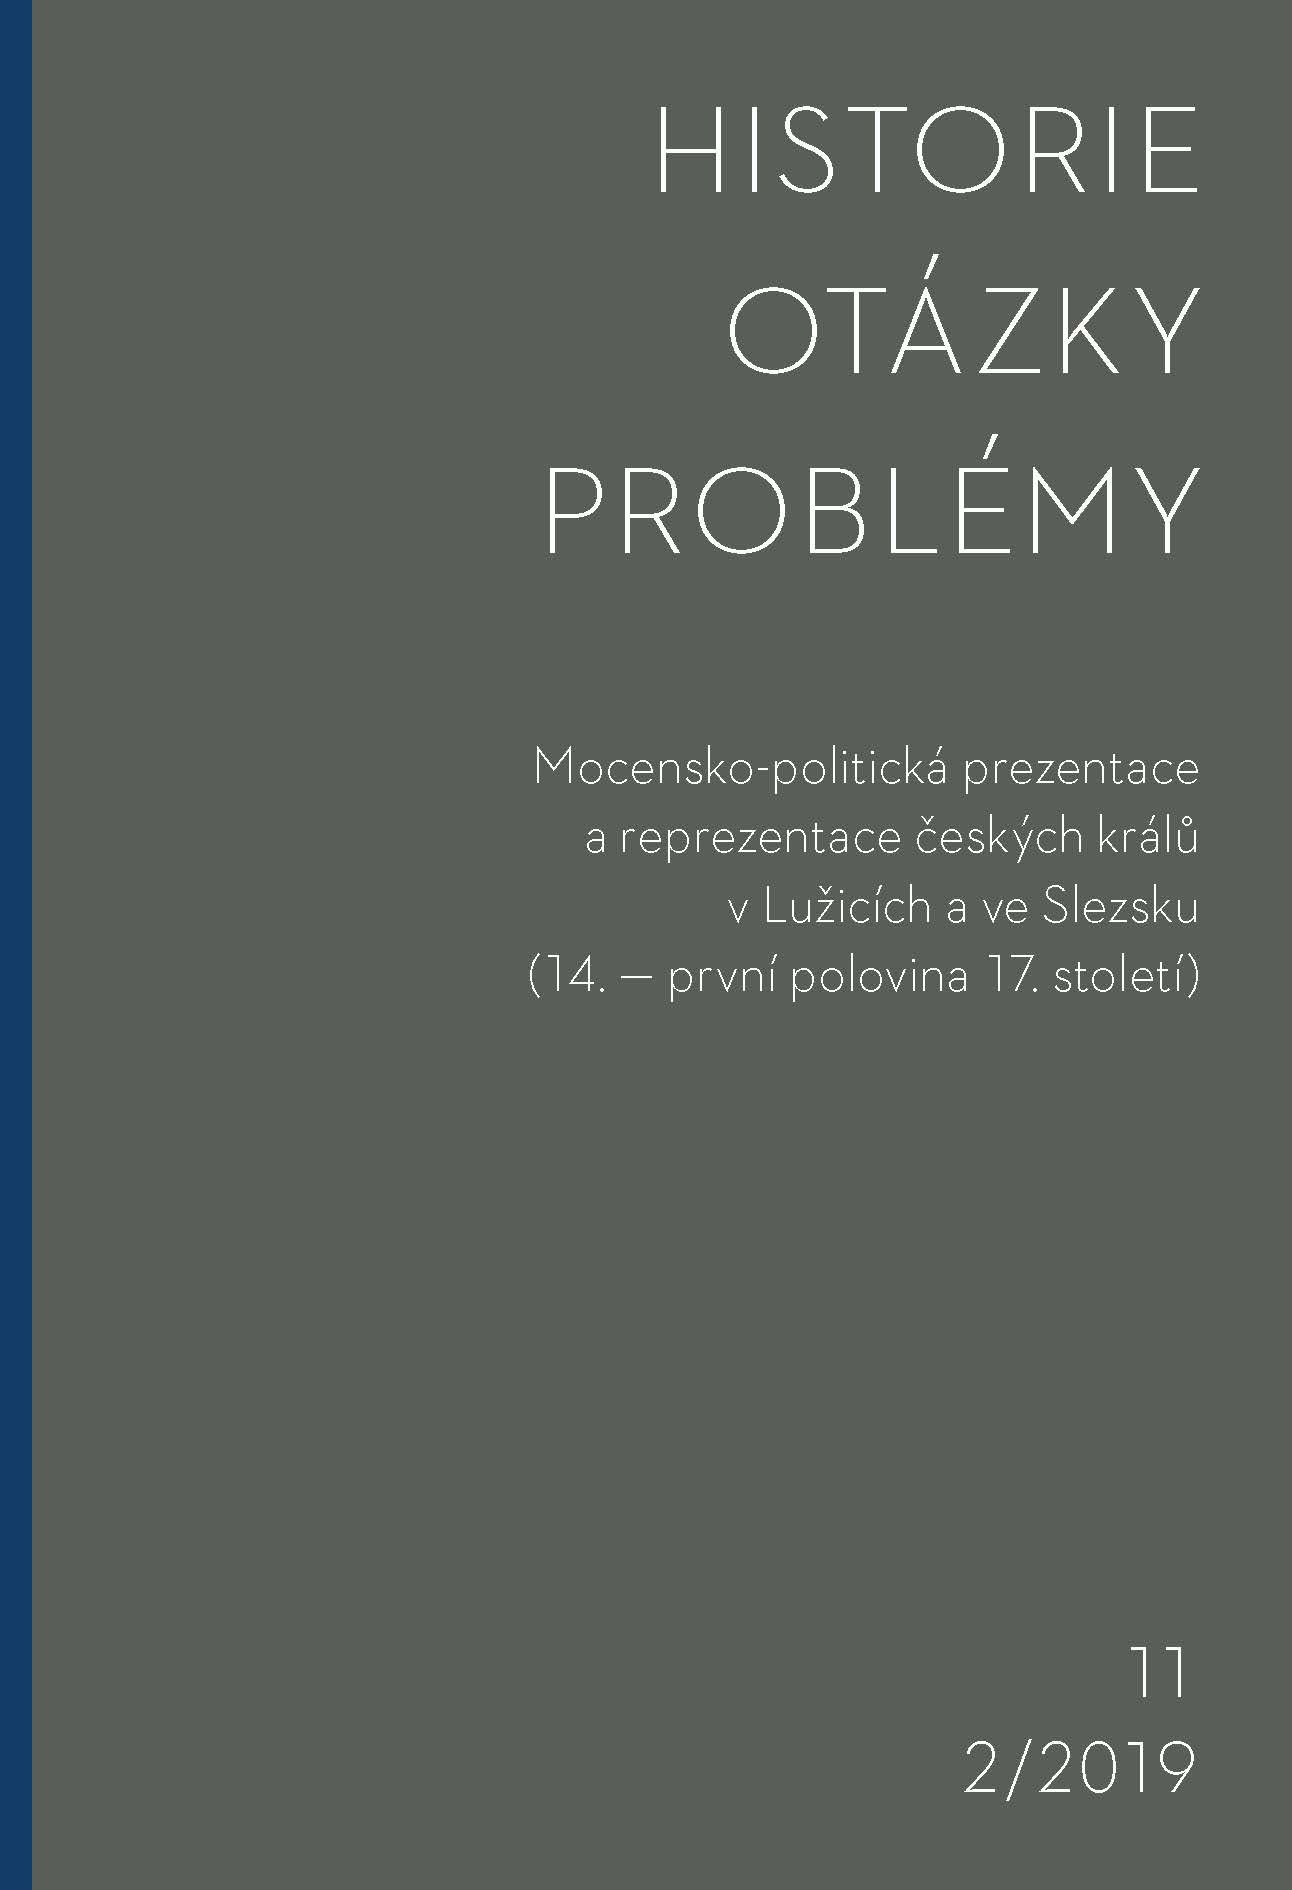 Powstawanie królewskiej administracji na Górnym Śląsku w XVI i XVII wieku (ze szczególnym uwzględnieniem księstwa cieszyńskiego)